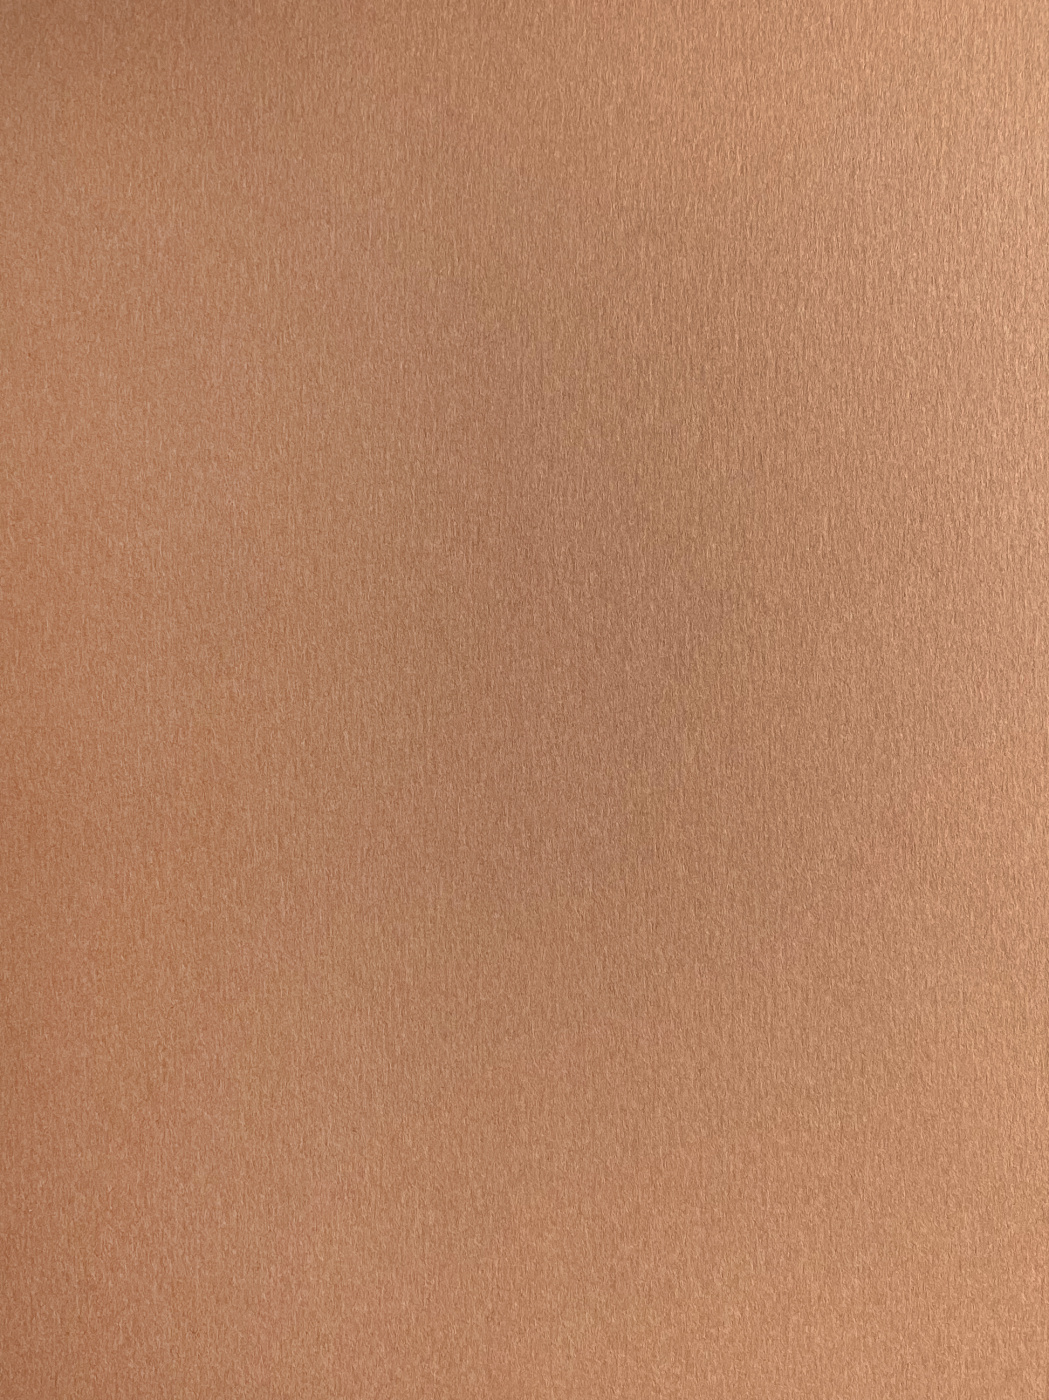 Бумага для пастели Малевичъ GrafArt А3 270 г, коричневая светлая подставка для рекламных материалов а4 вертикальная 210 х 297 мм настольная двусторонняя оргстекло